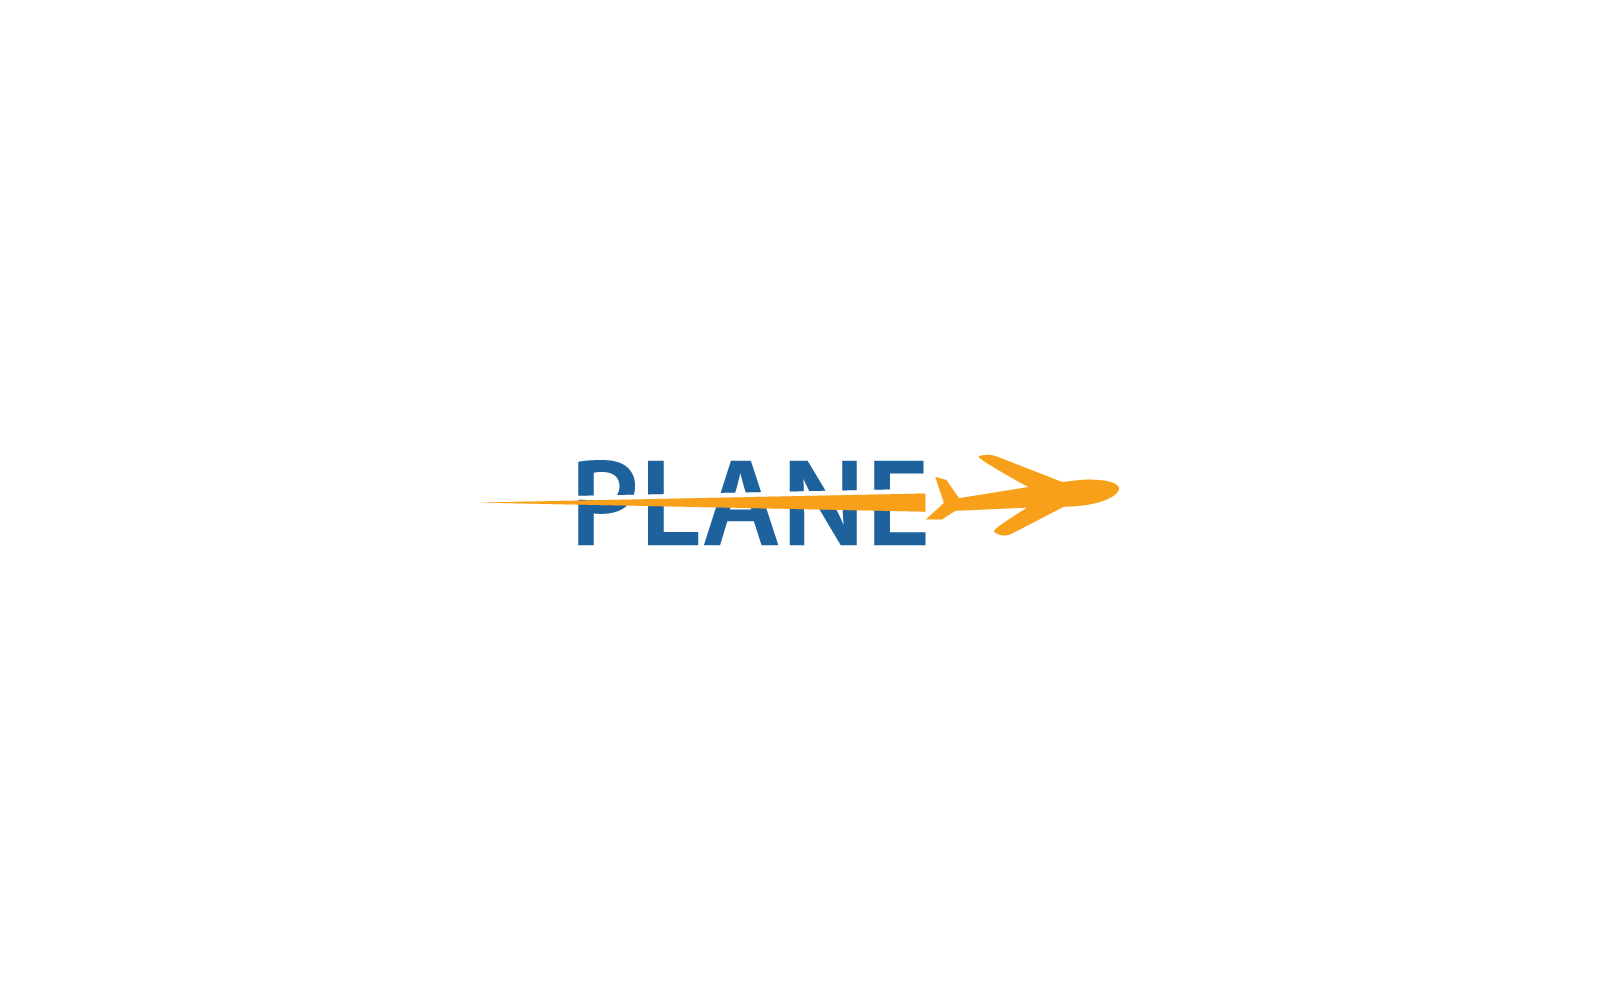 Plane Travel logo icon vector template